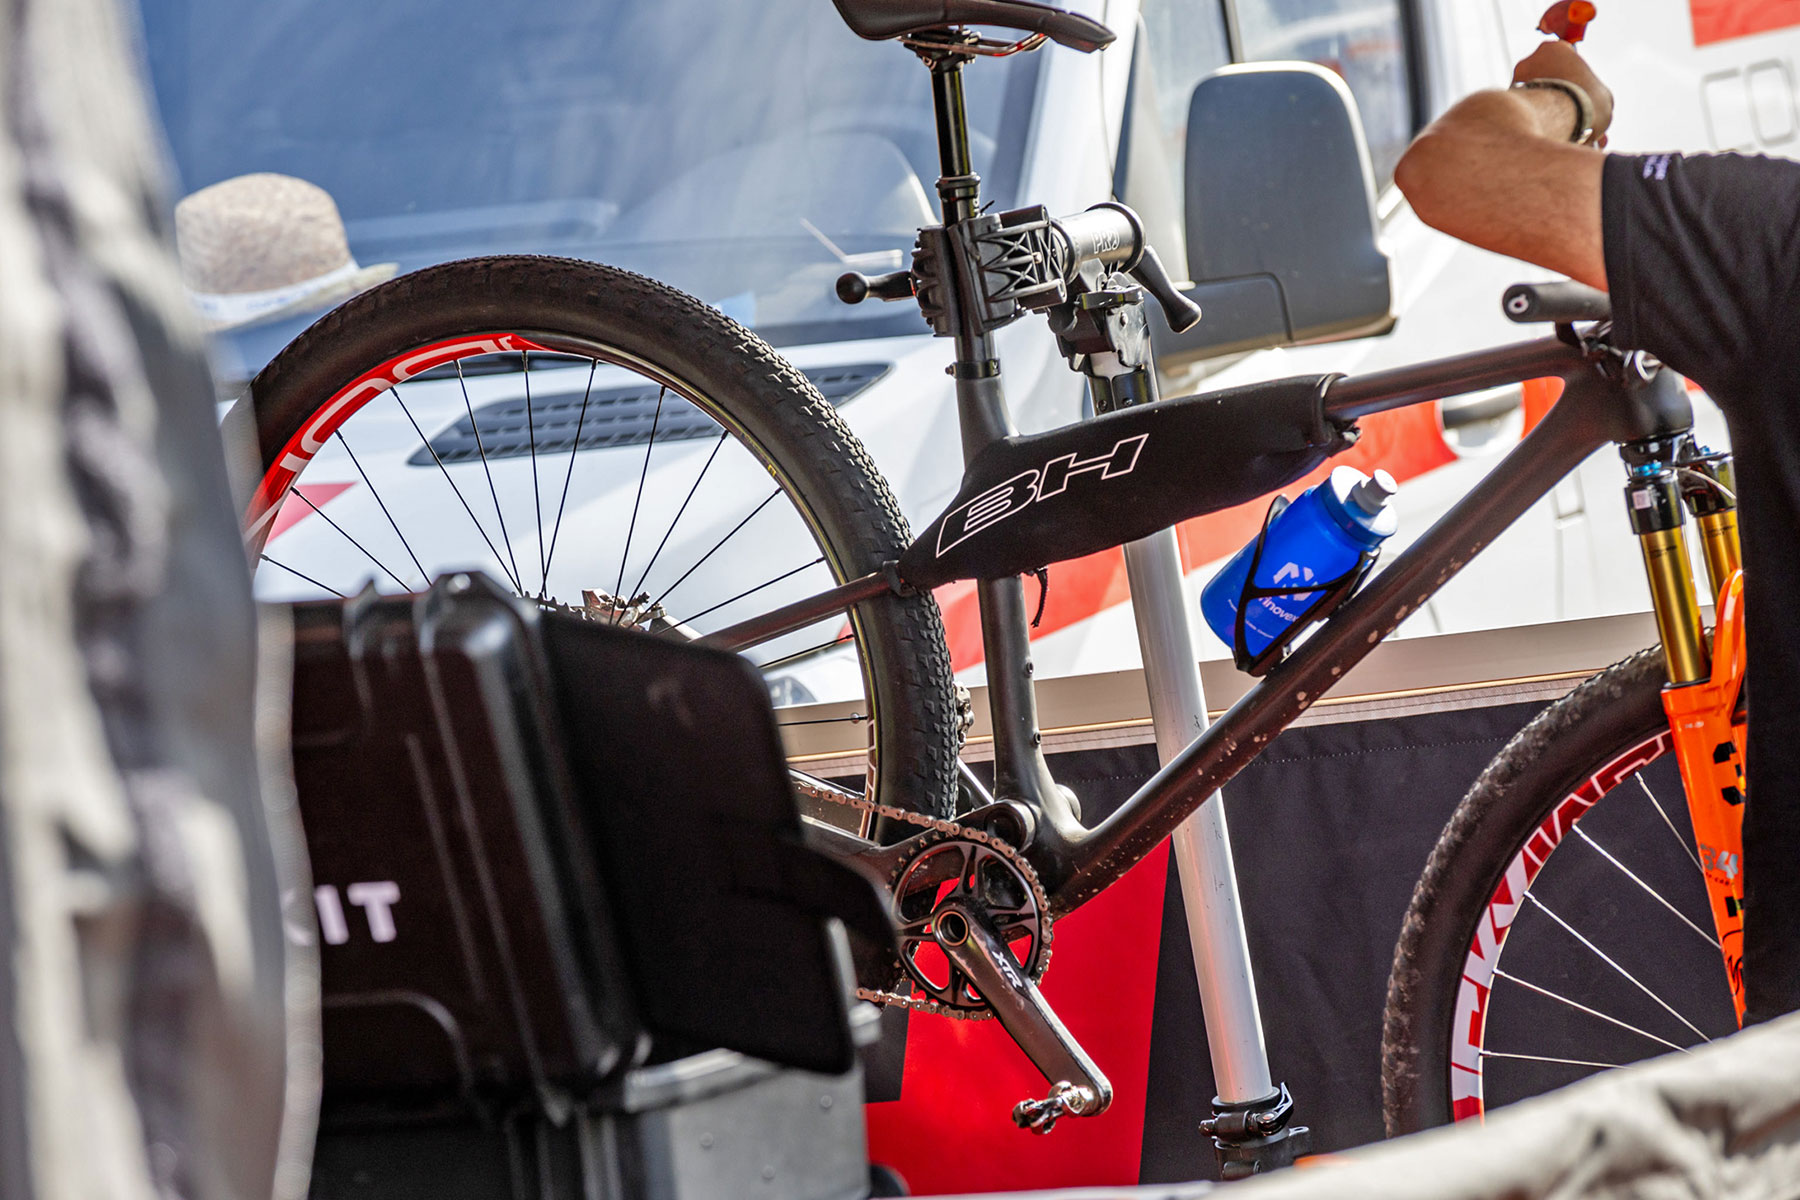 Fotos espía: ¿Es este prototipo BH XC la próxima evolución de su bicicleta de montaña Lynx Race?